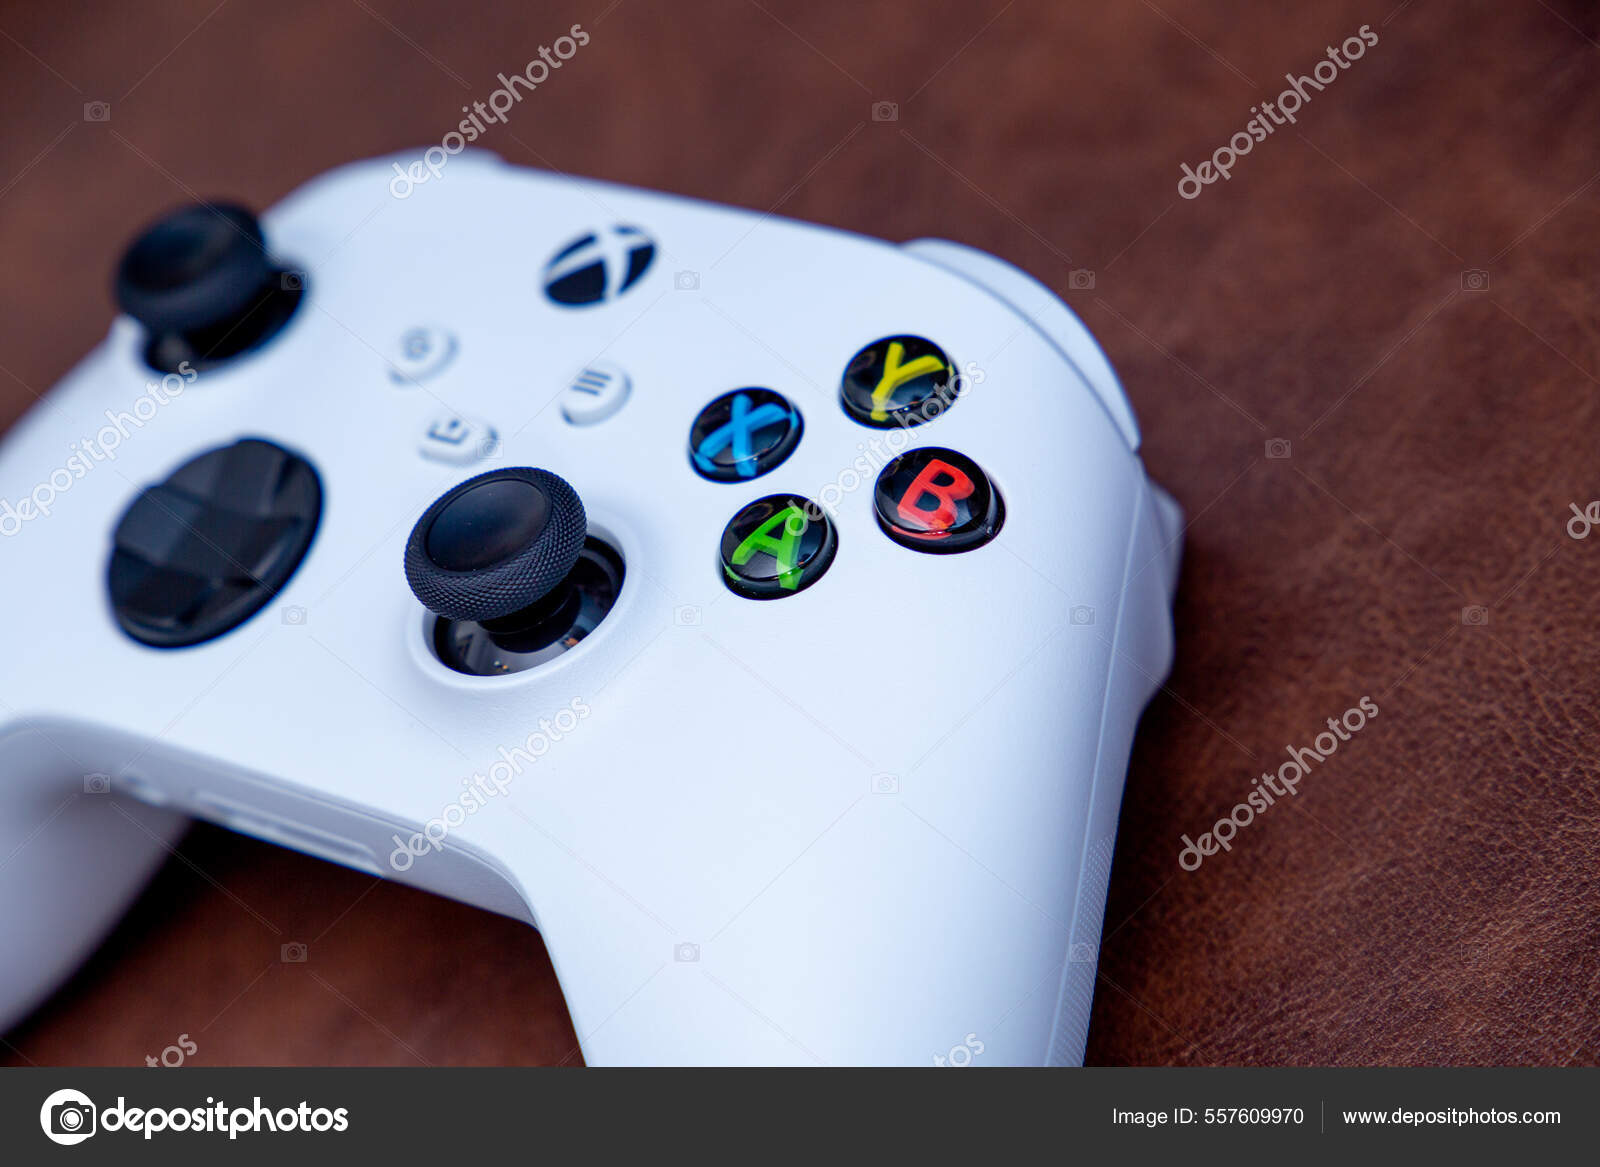 Sao Paulo Brazil 2022 New Video Game Console Xbox Series – Stock Editorial  Photo © PedroTruffi #557610206